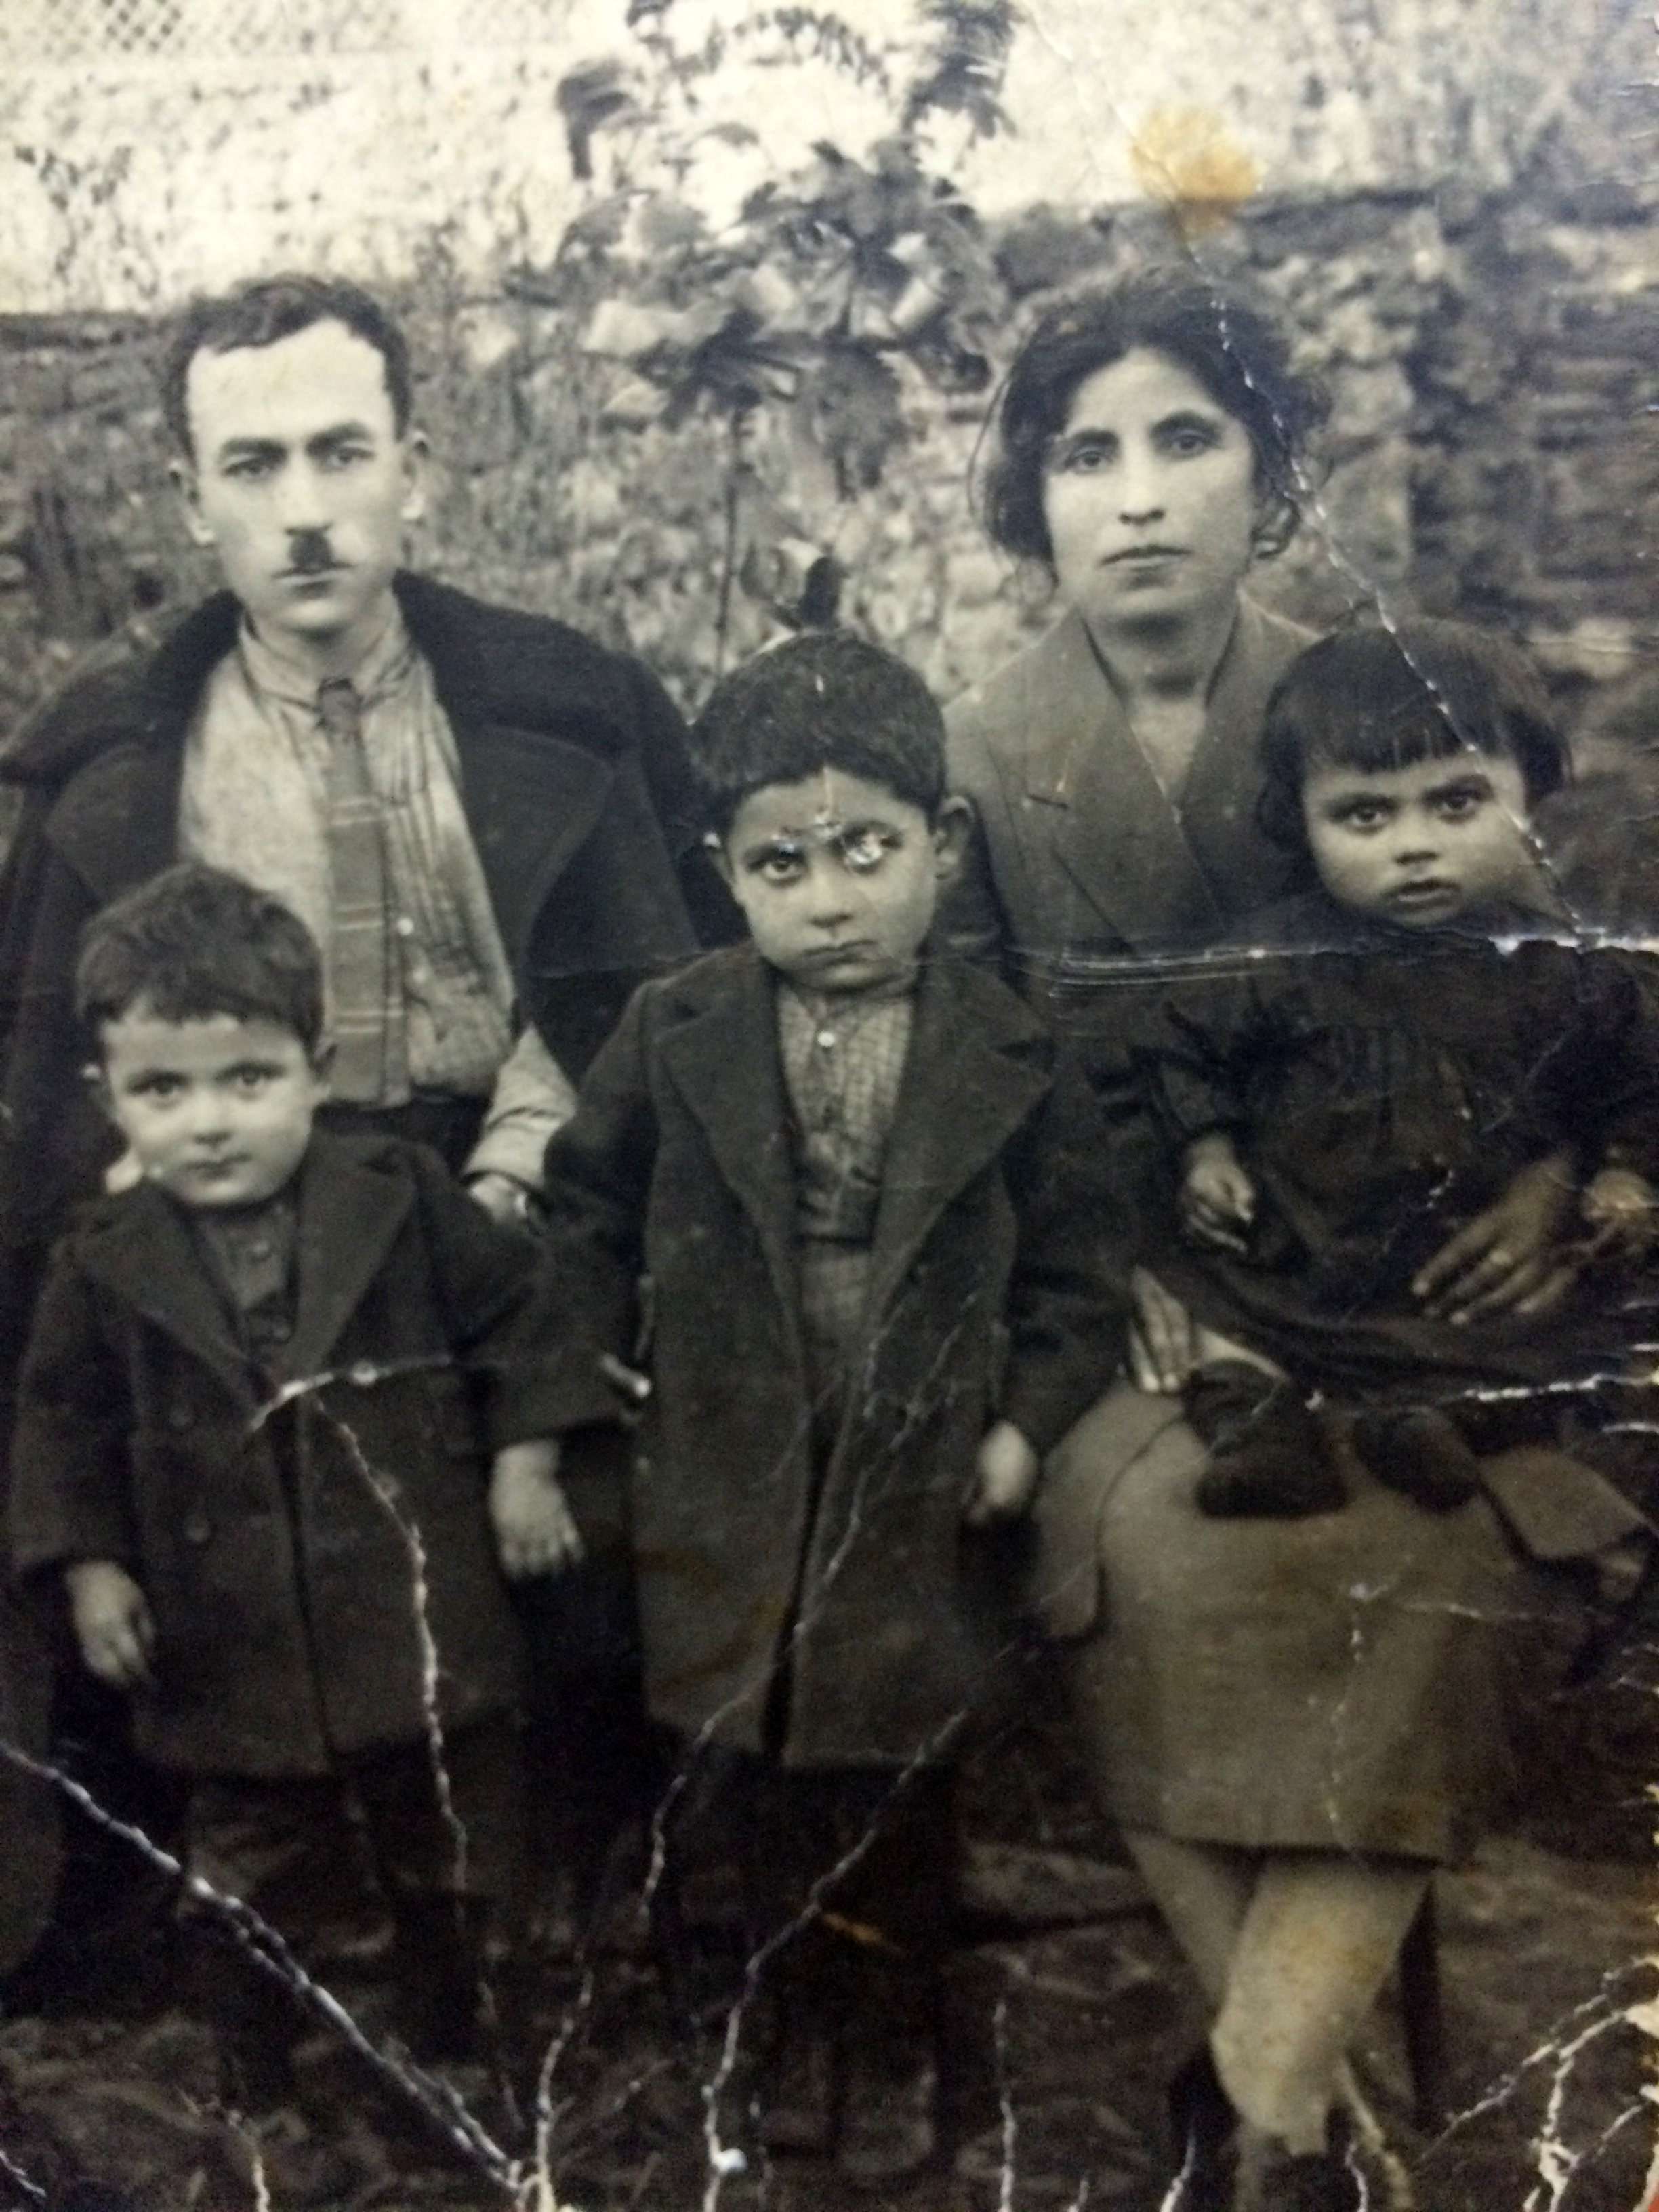 armenian family